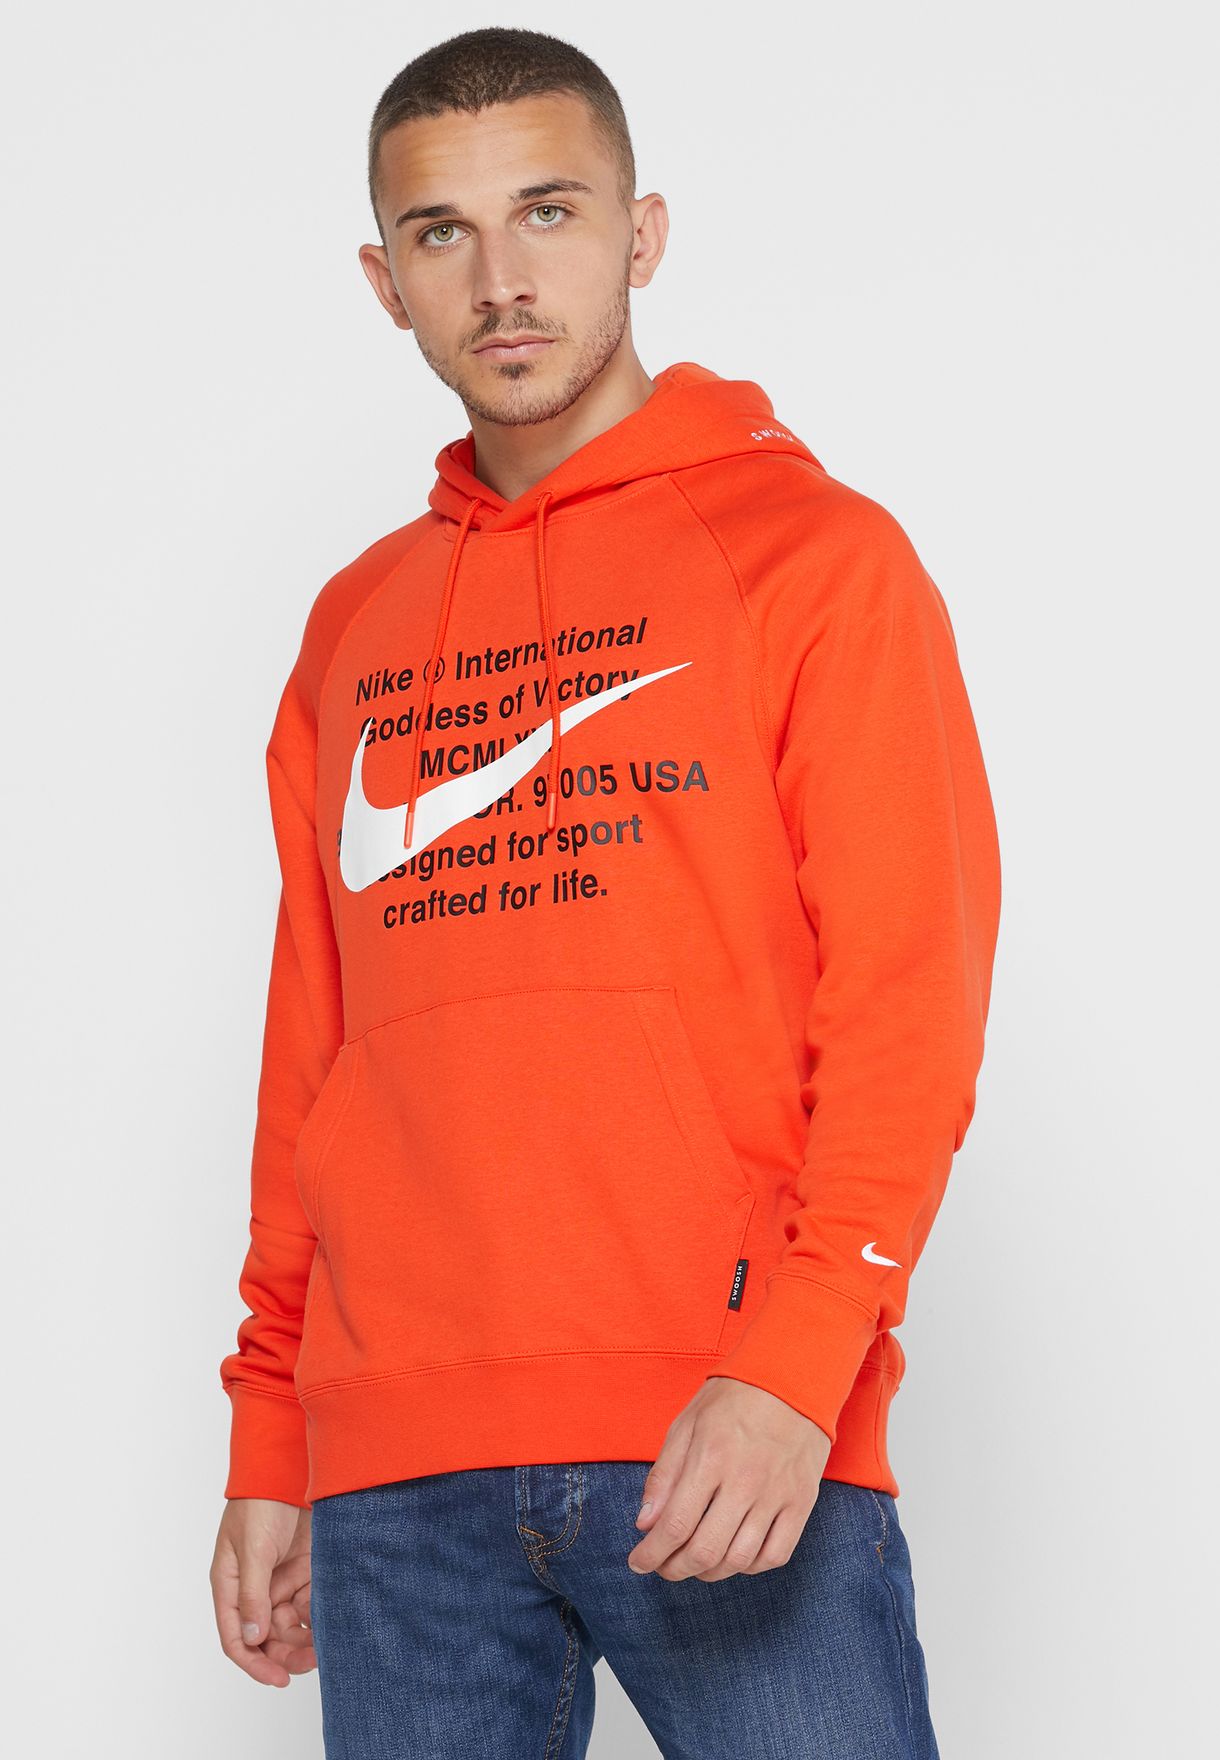 nike orange hoodie